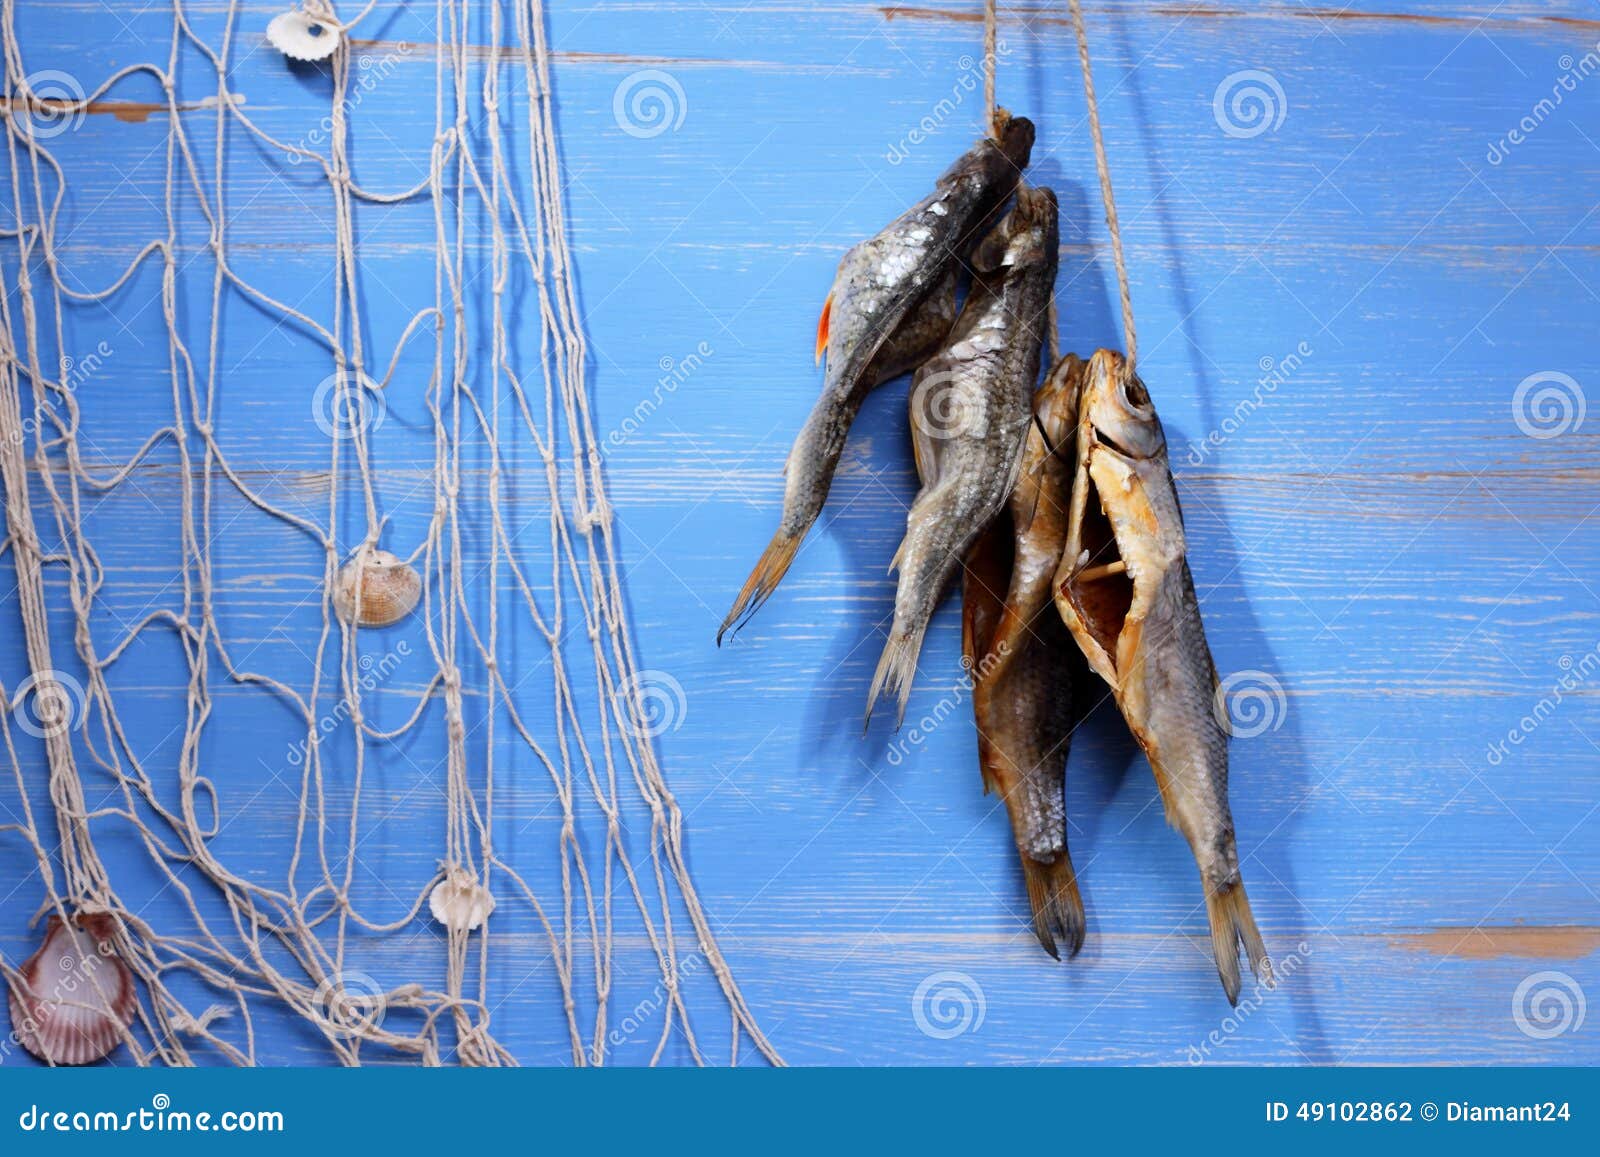 Pesce del rudd e rete da pesca secchi su fondo blu, orizzontale